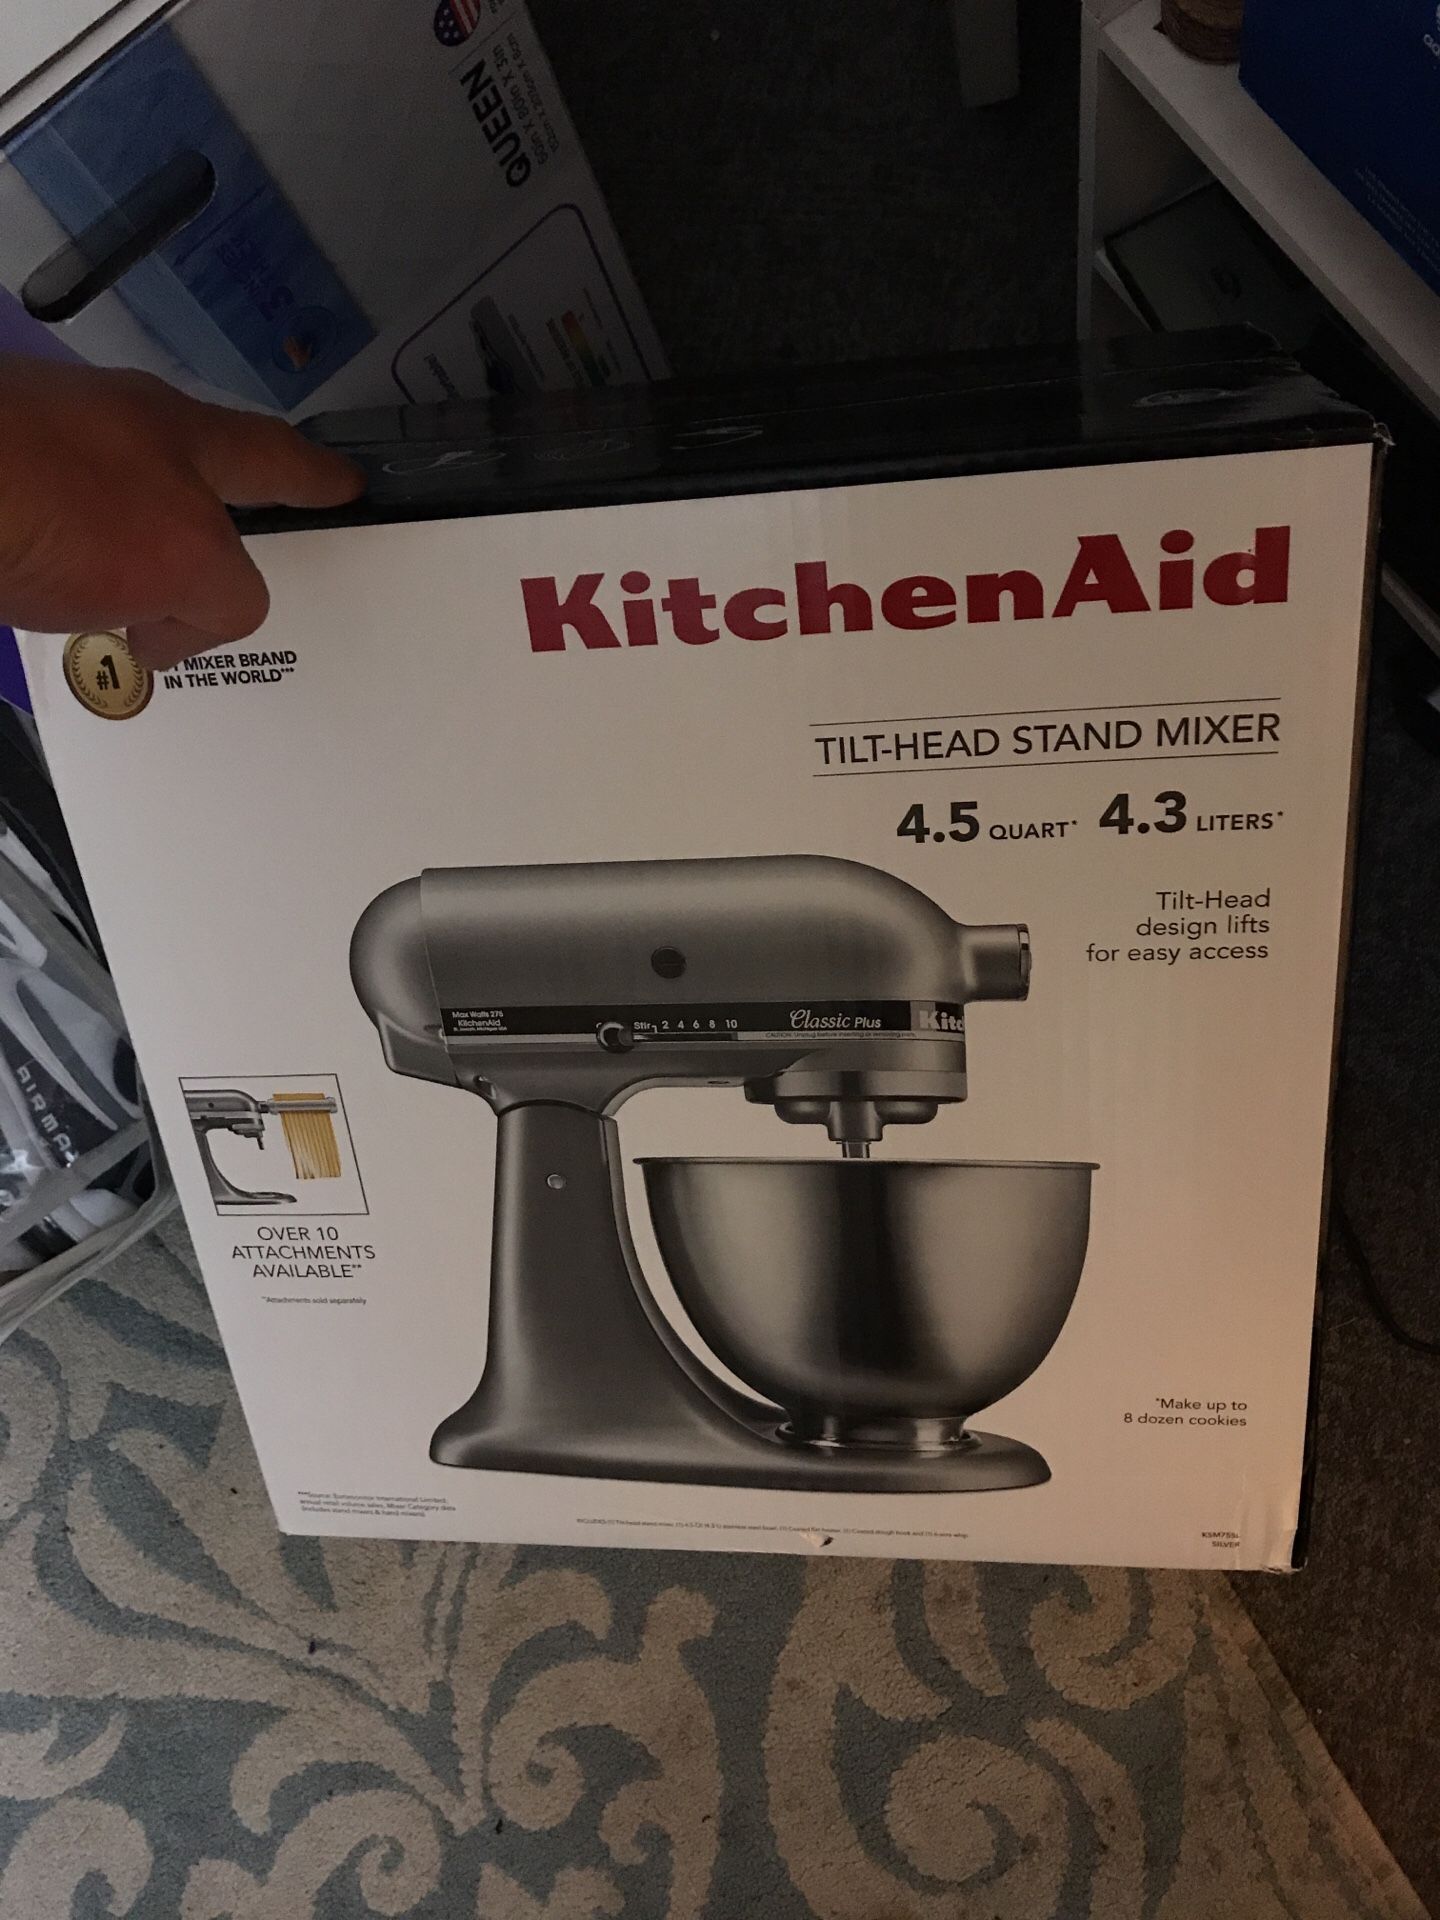 Kitchen aid tilt head mixer (classic plus)